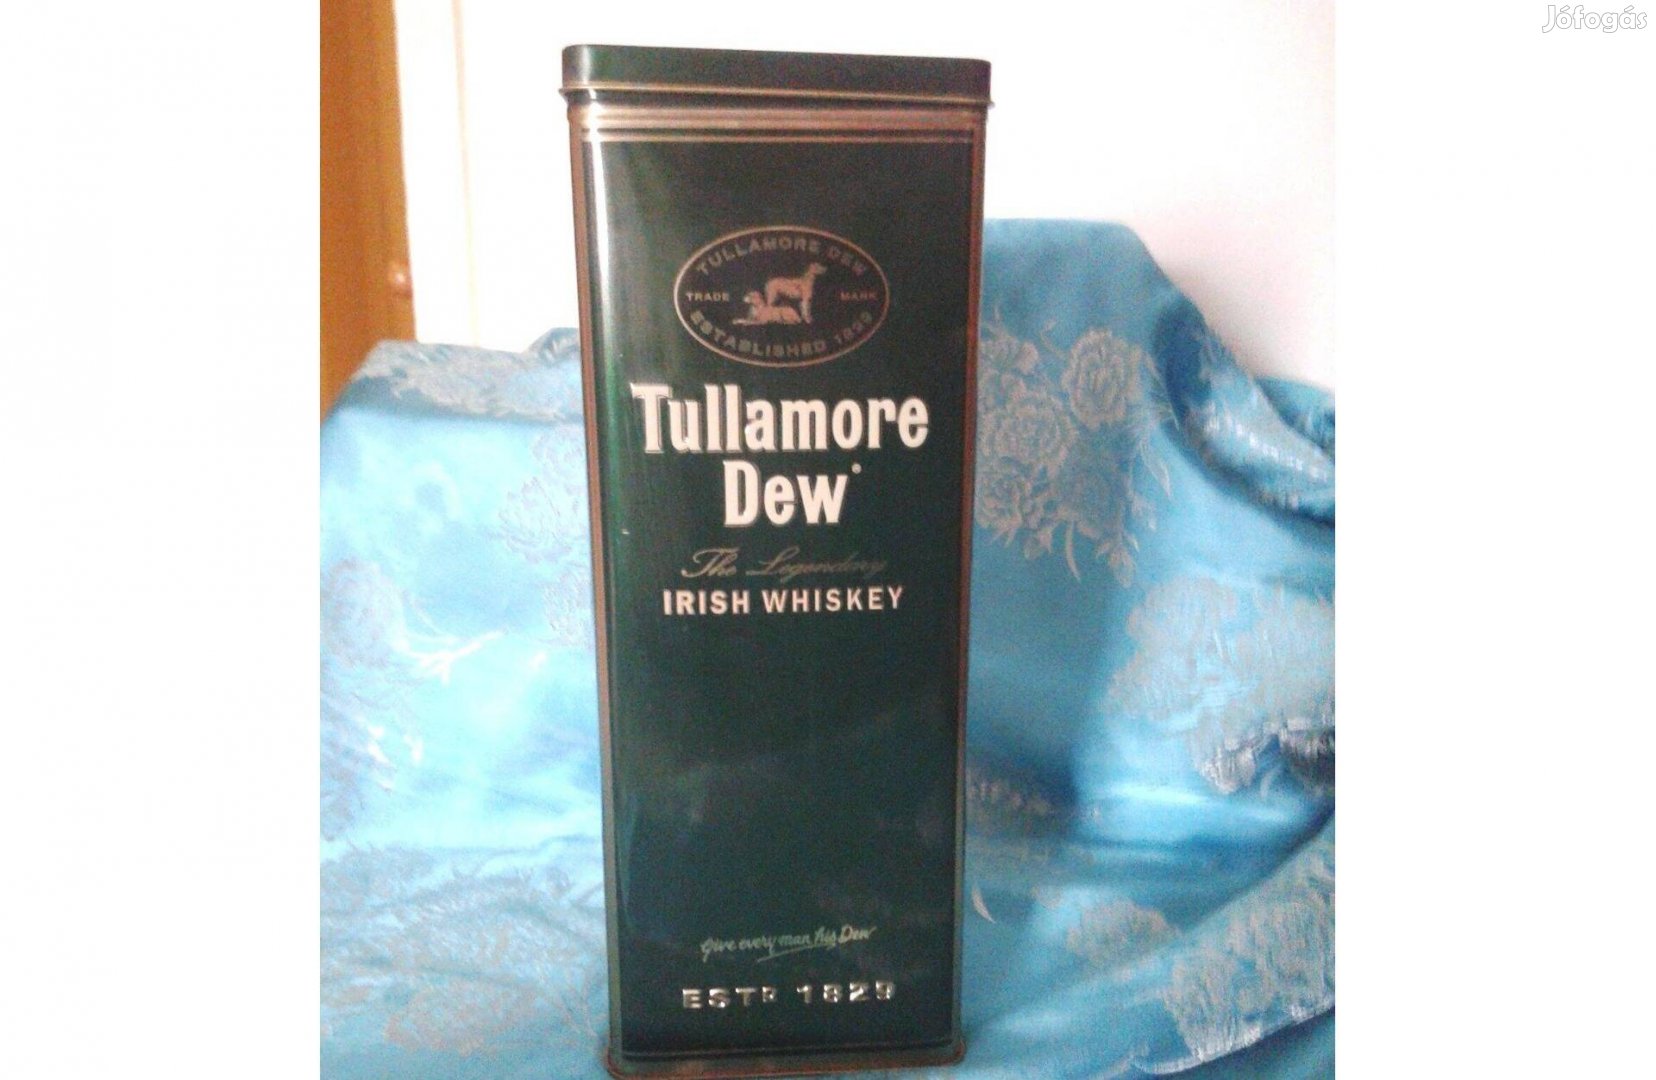 Tullamore Dew fém italos doboz megkímélt állapotban gyűjtőknek